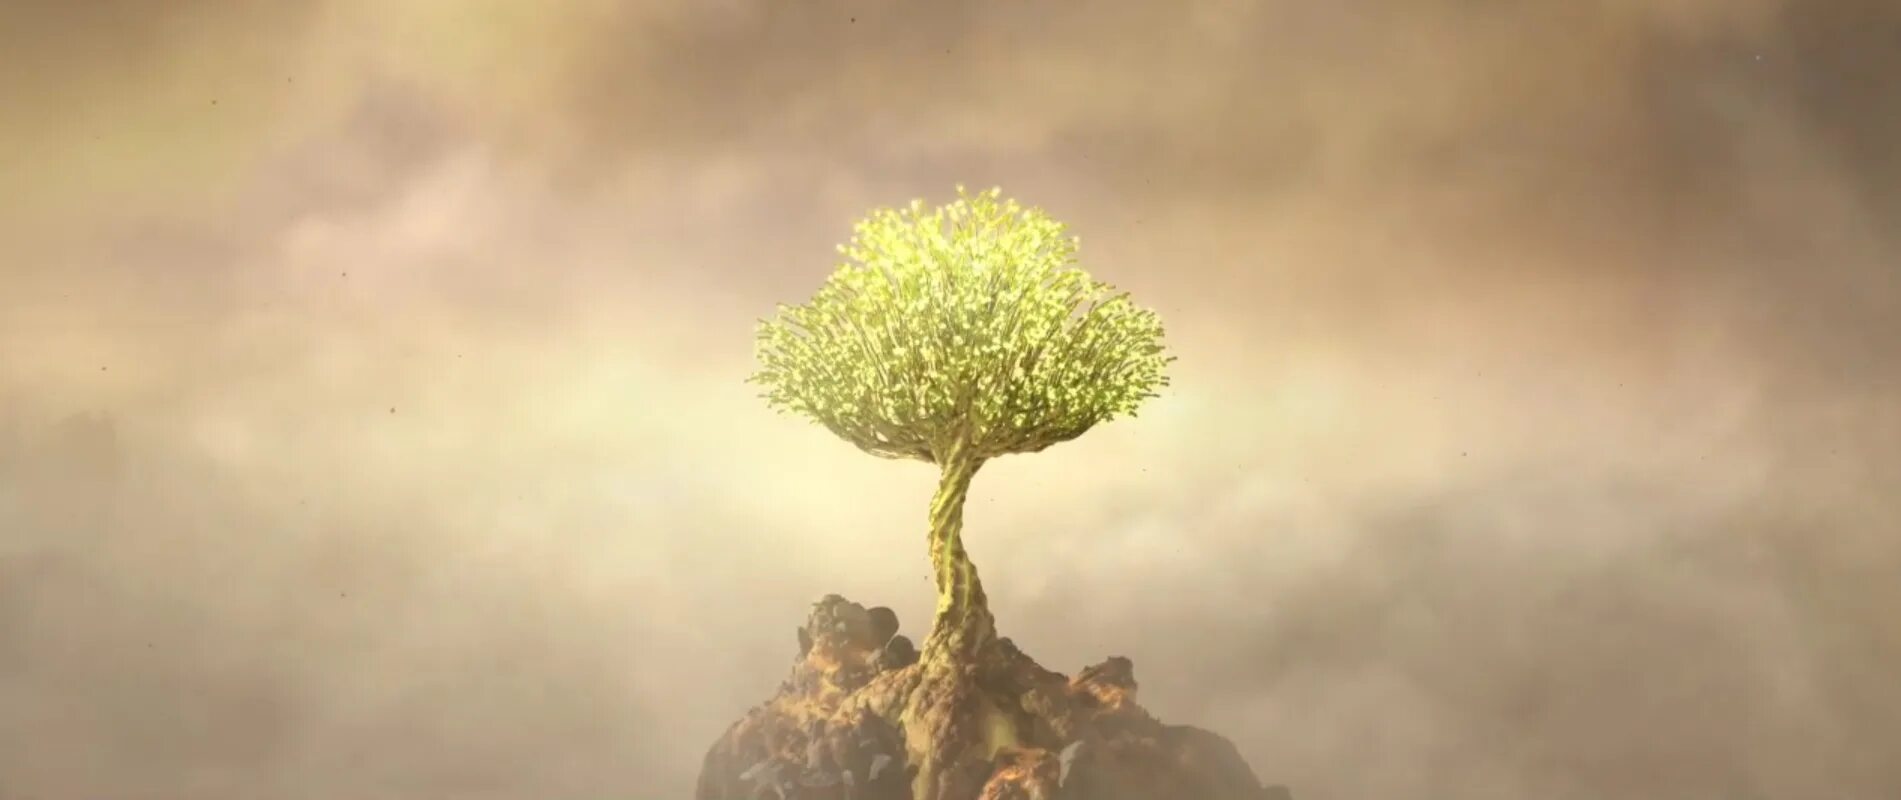 Превращение неживого в живое. Абиогенез теория зарождения жизни. Зарождение жизни из неживого. Зарождение жизни дерево. Живое из неживого теория.